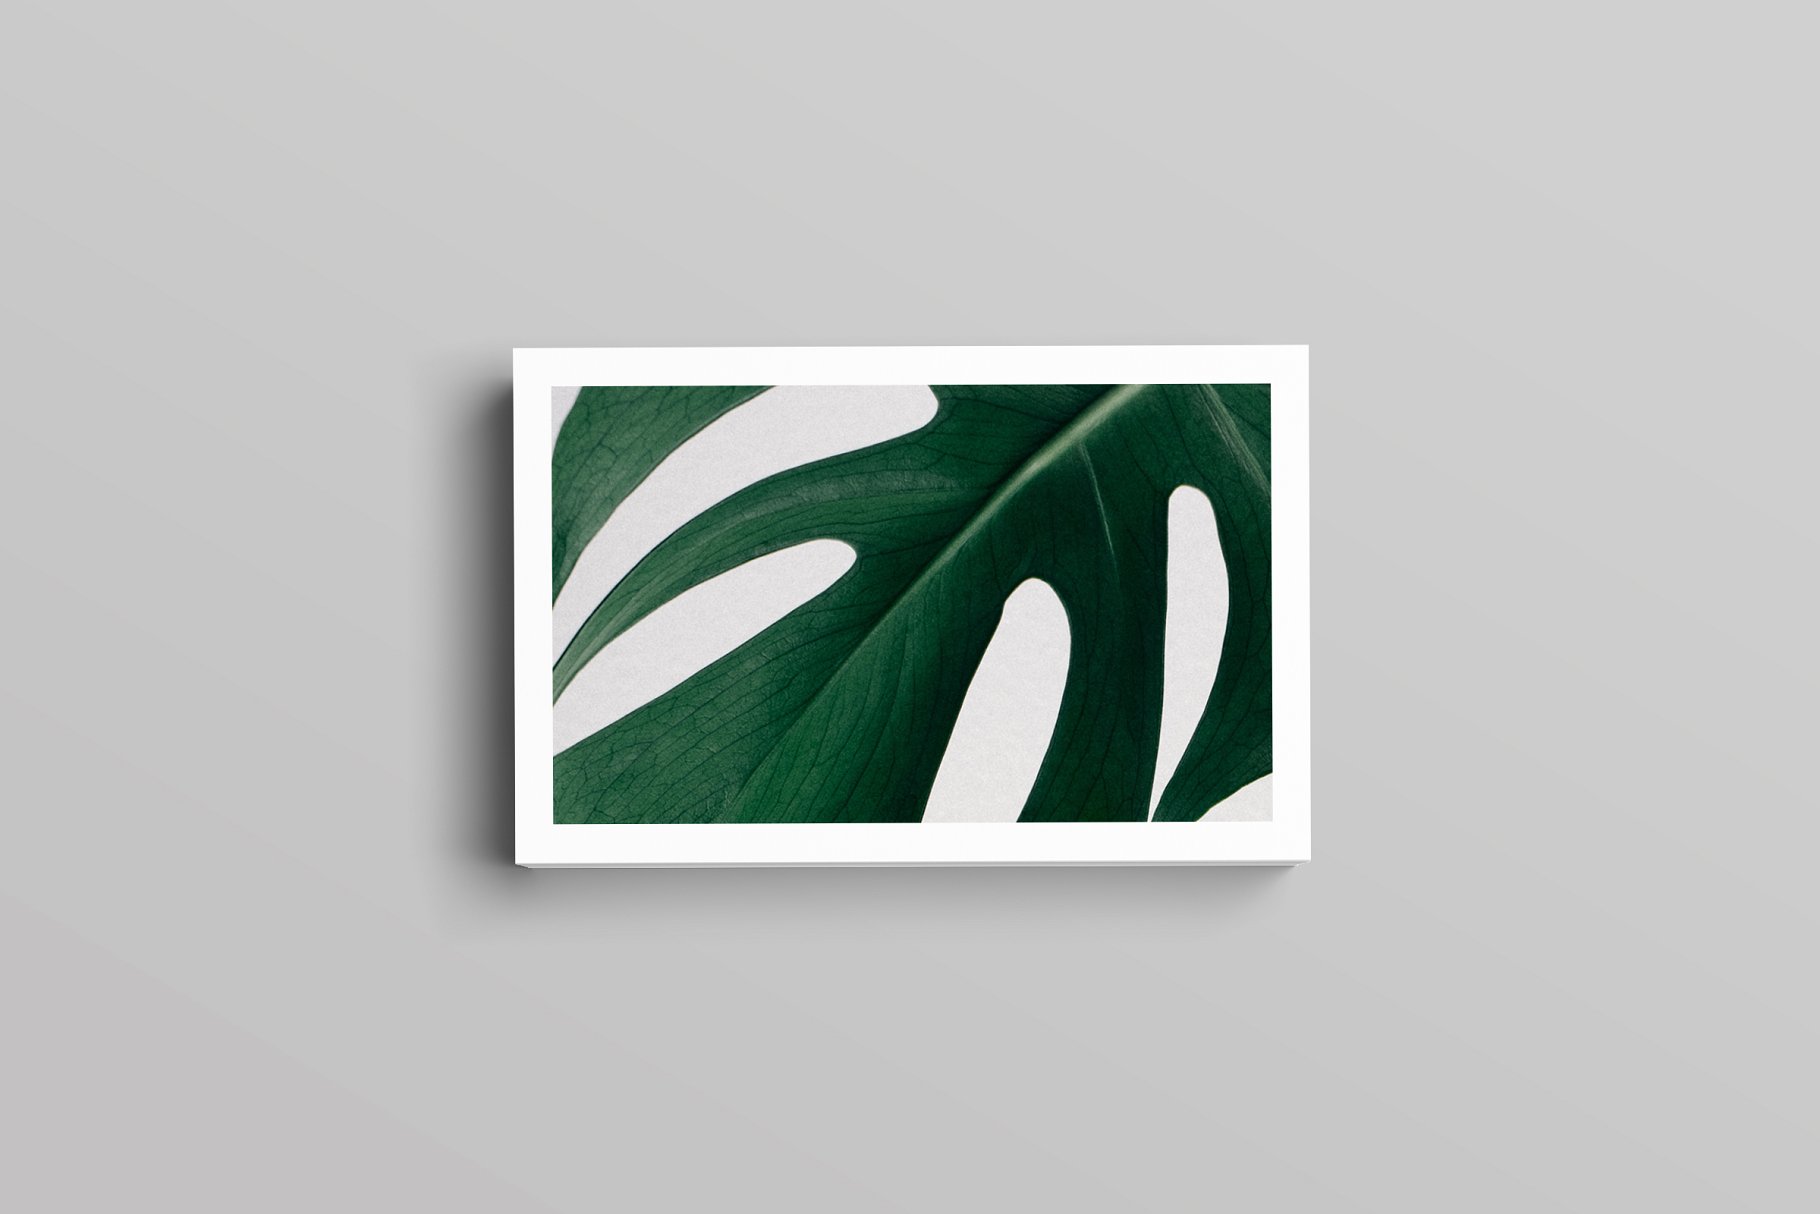 优雅简约风高端企业名片设计模板 Aaron Business Card Template插图2